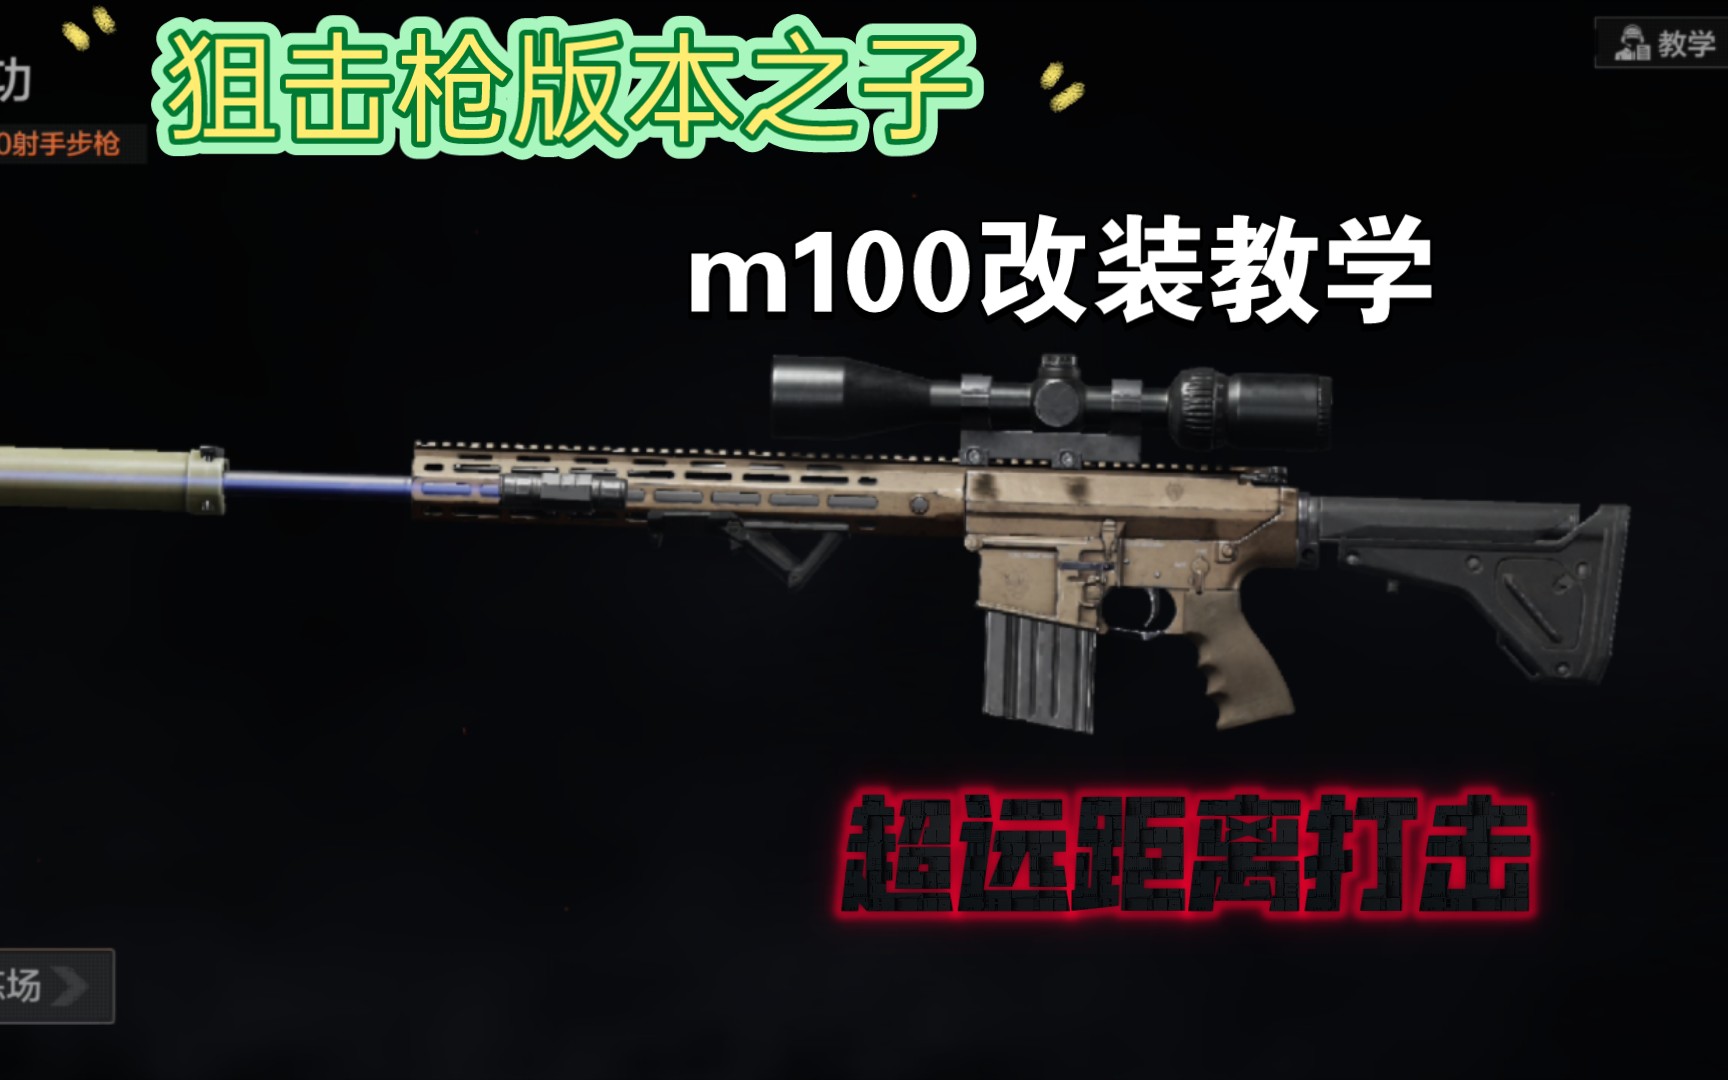 暗区突围武器推荐第十七期m110狙击枪